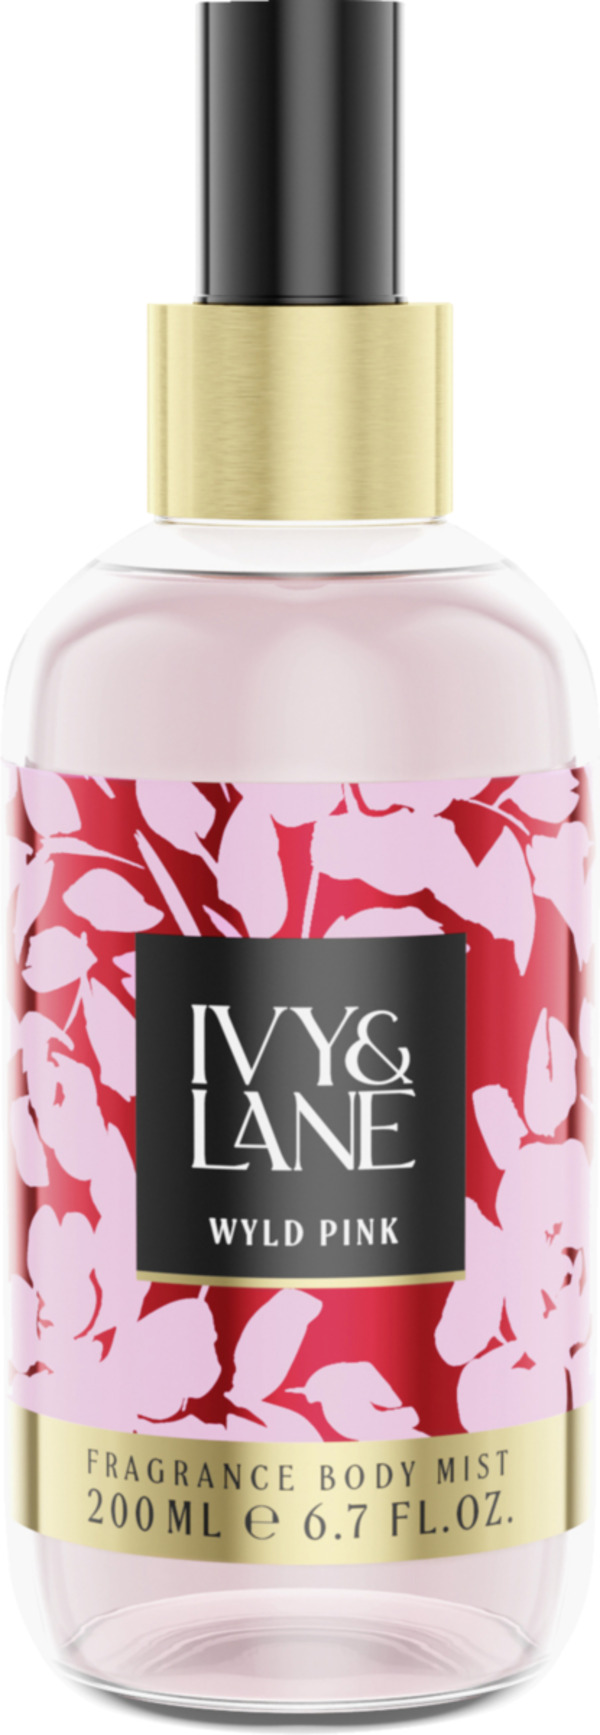 Bild 1 von Ivy & Lane Wyld Pink, Bodymist 200 ml